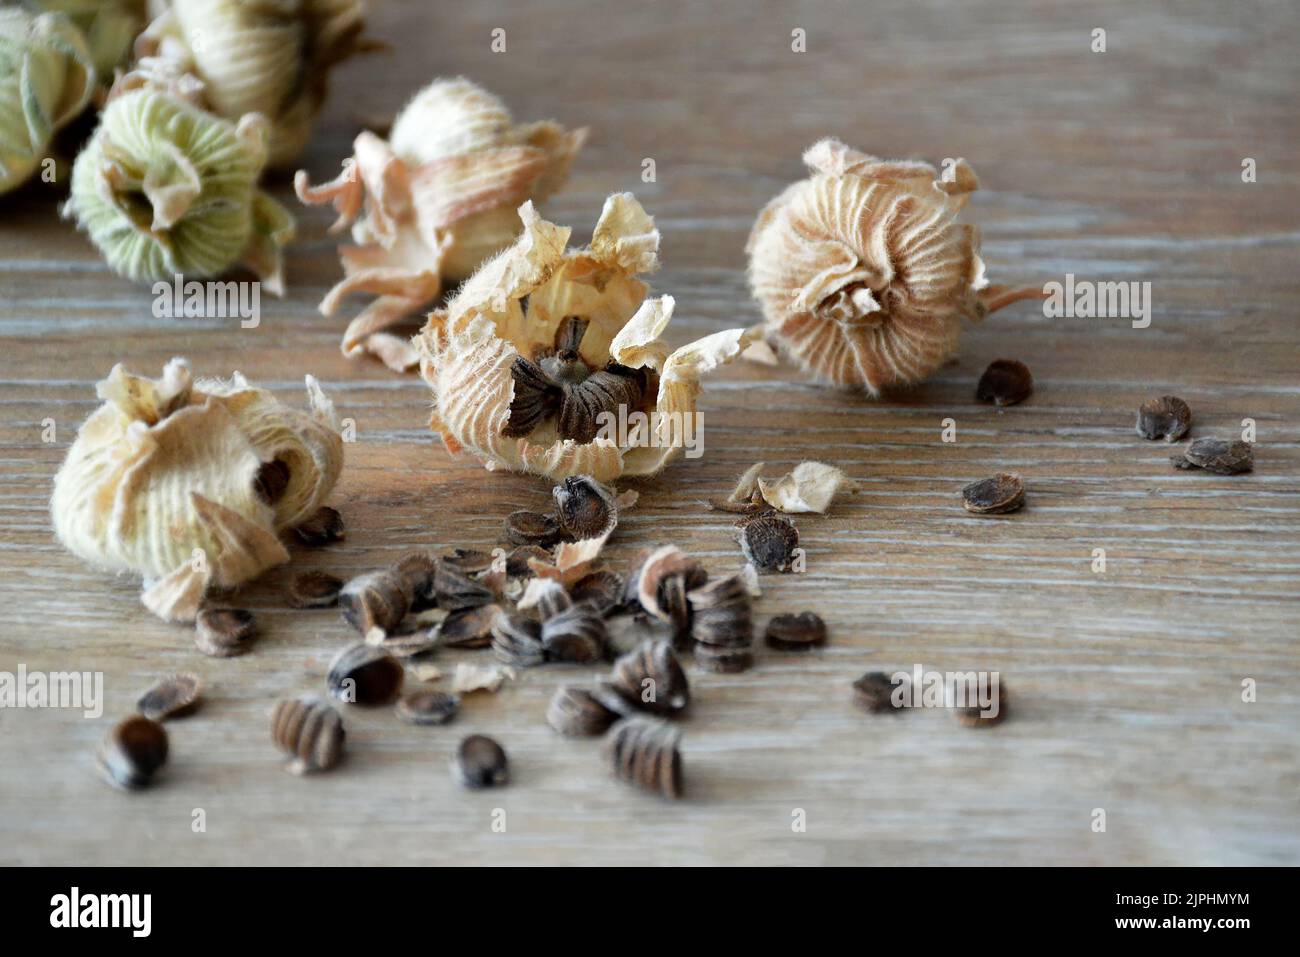 Sammeln von Hollyhock-Blumensamen aus getrockneten Samenschoten Stockfoto